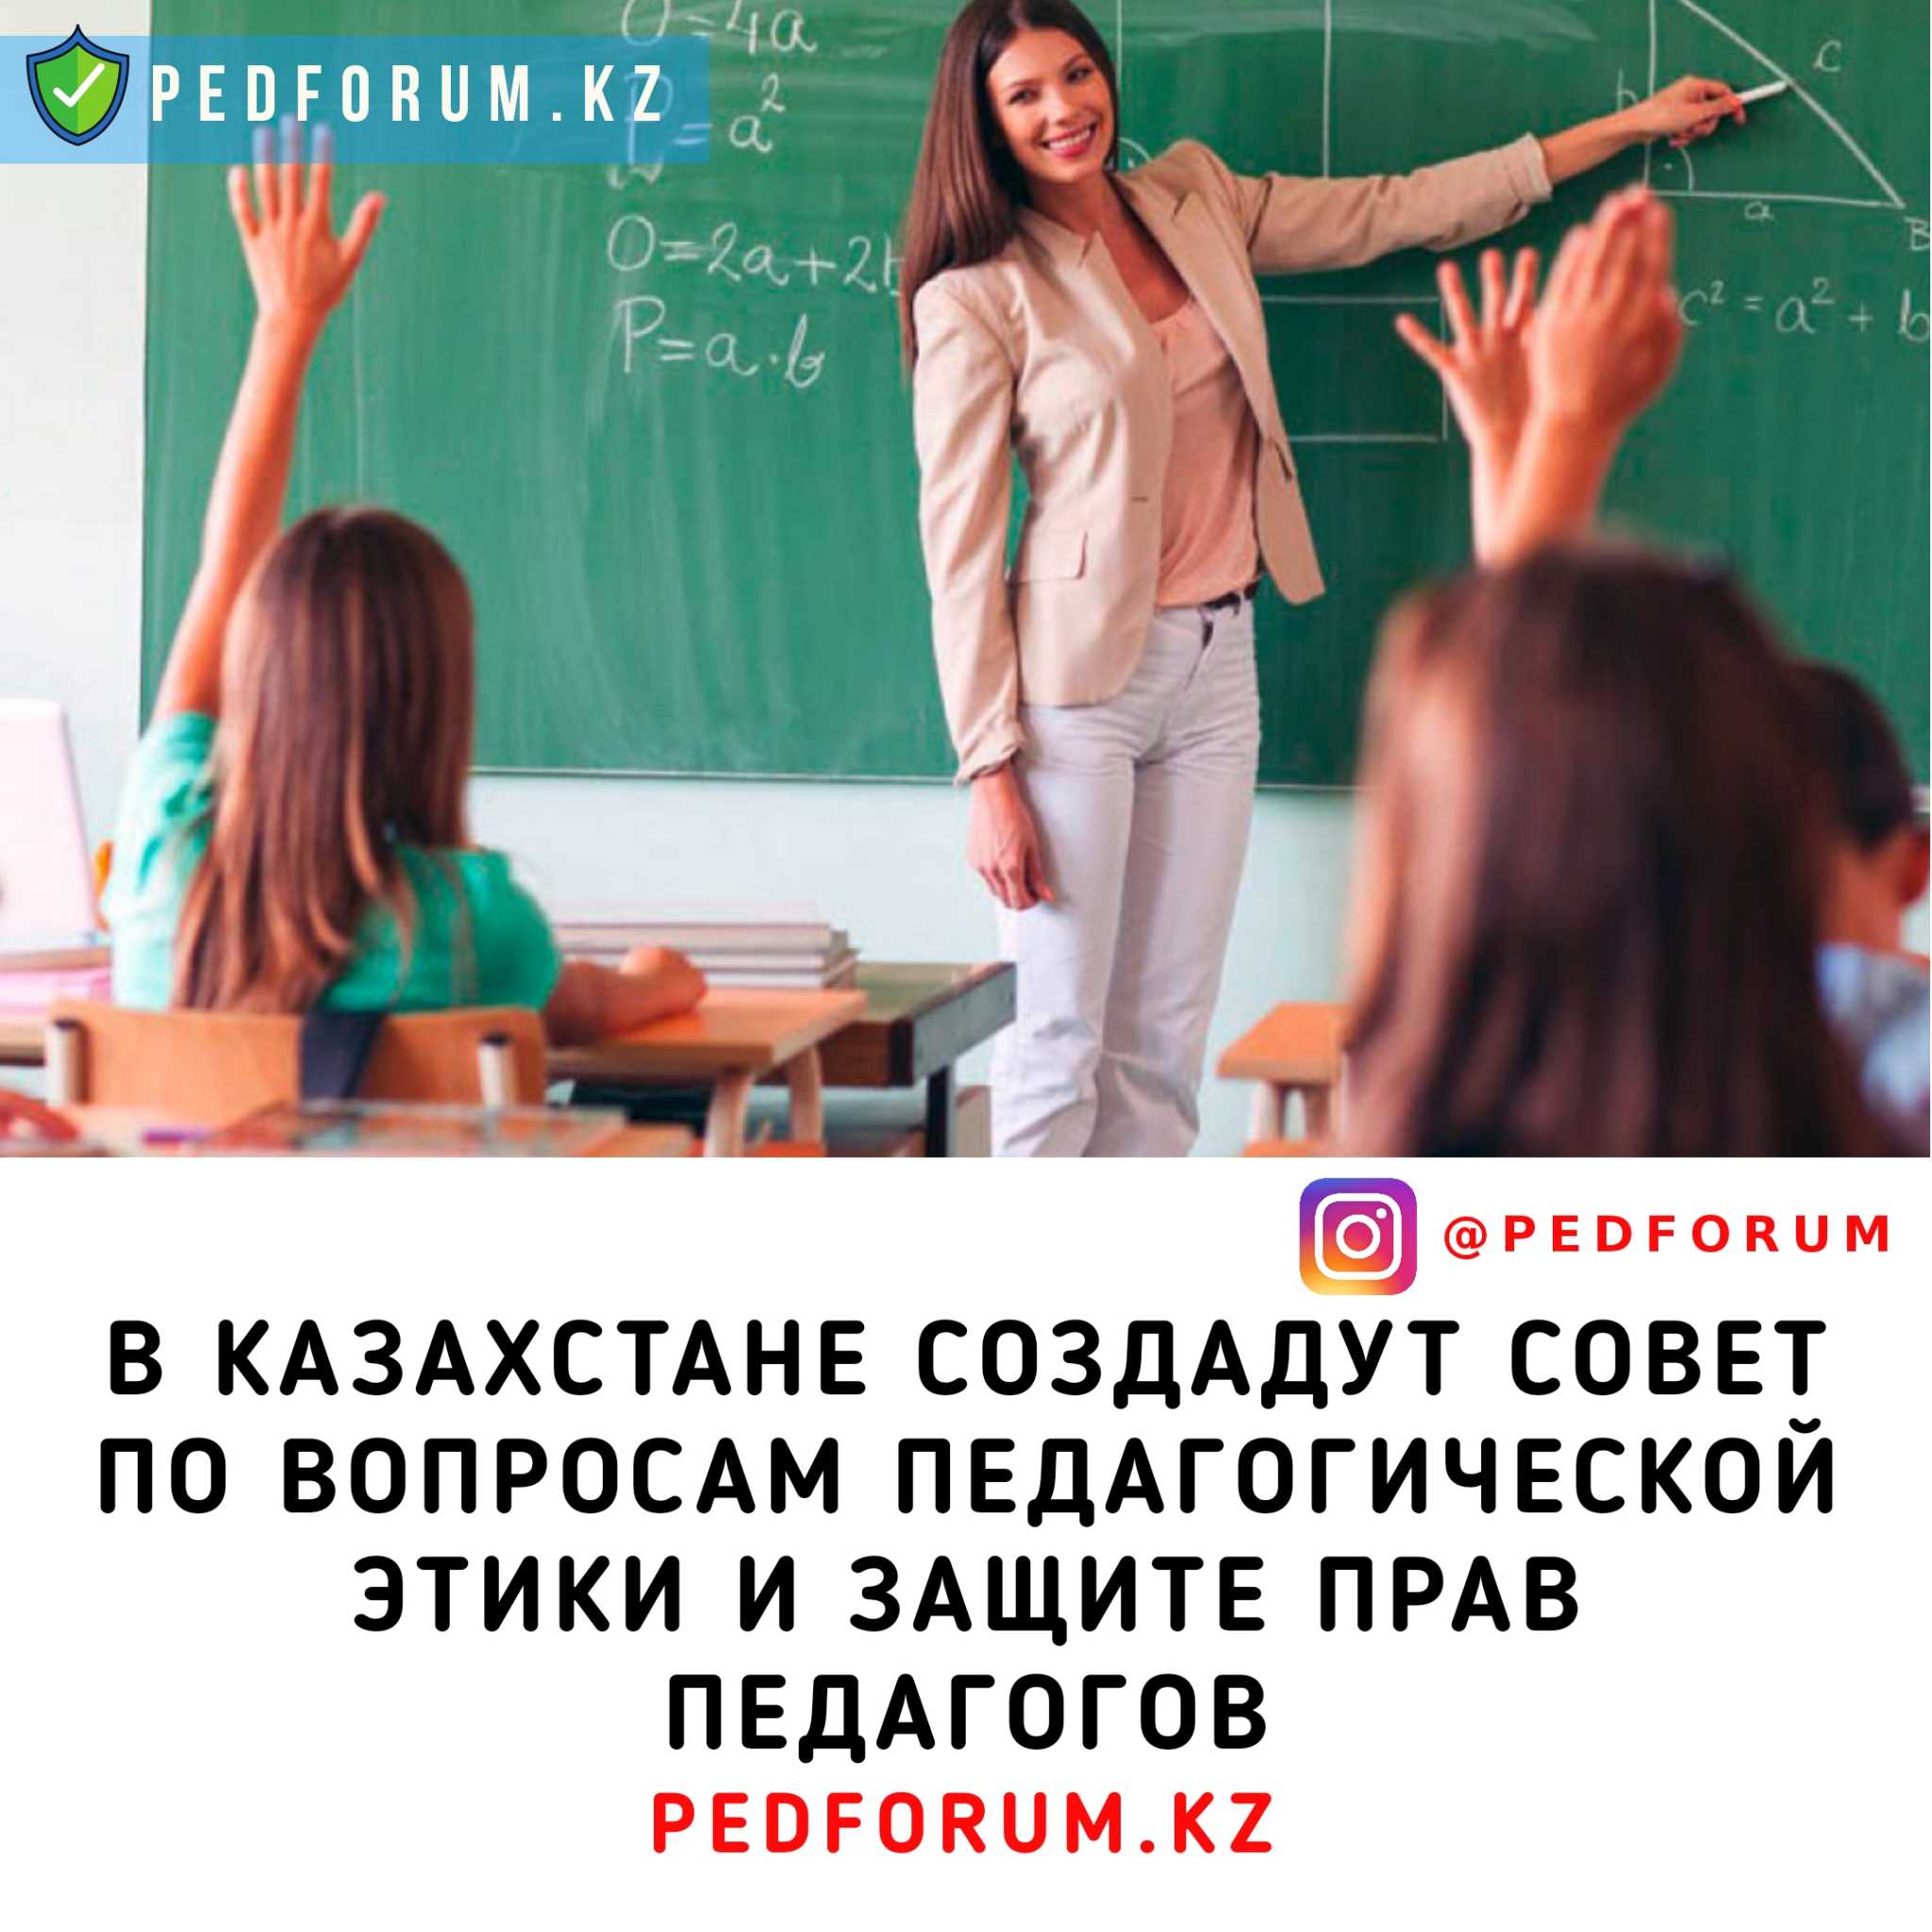 В Казахстане создадут Совет по вопросам педагогической этики и защите прав педагогов